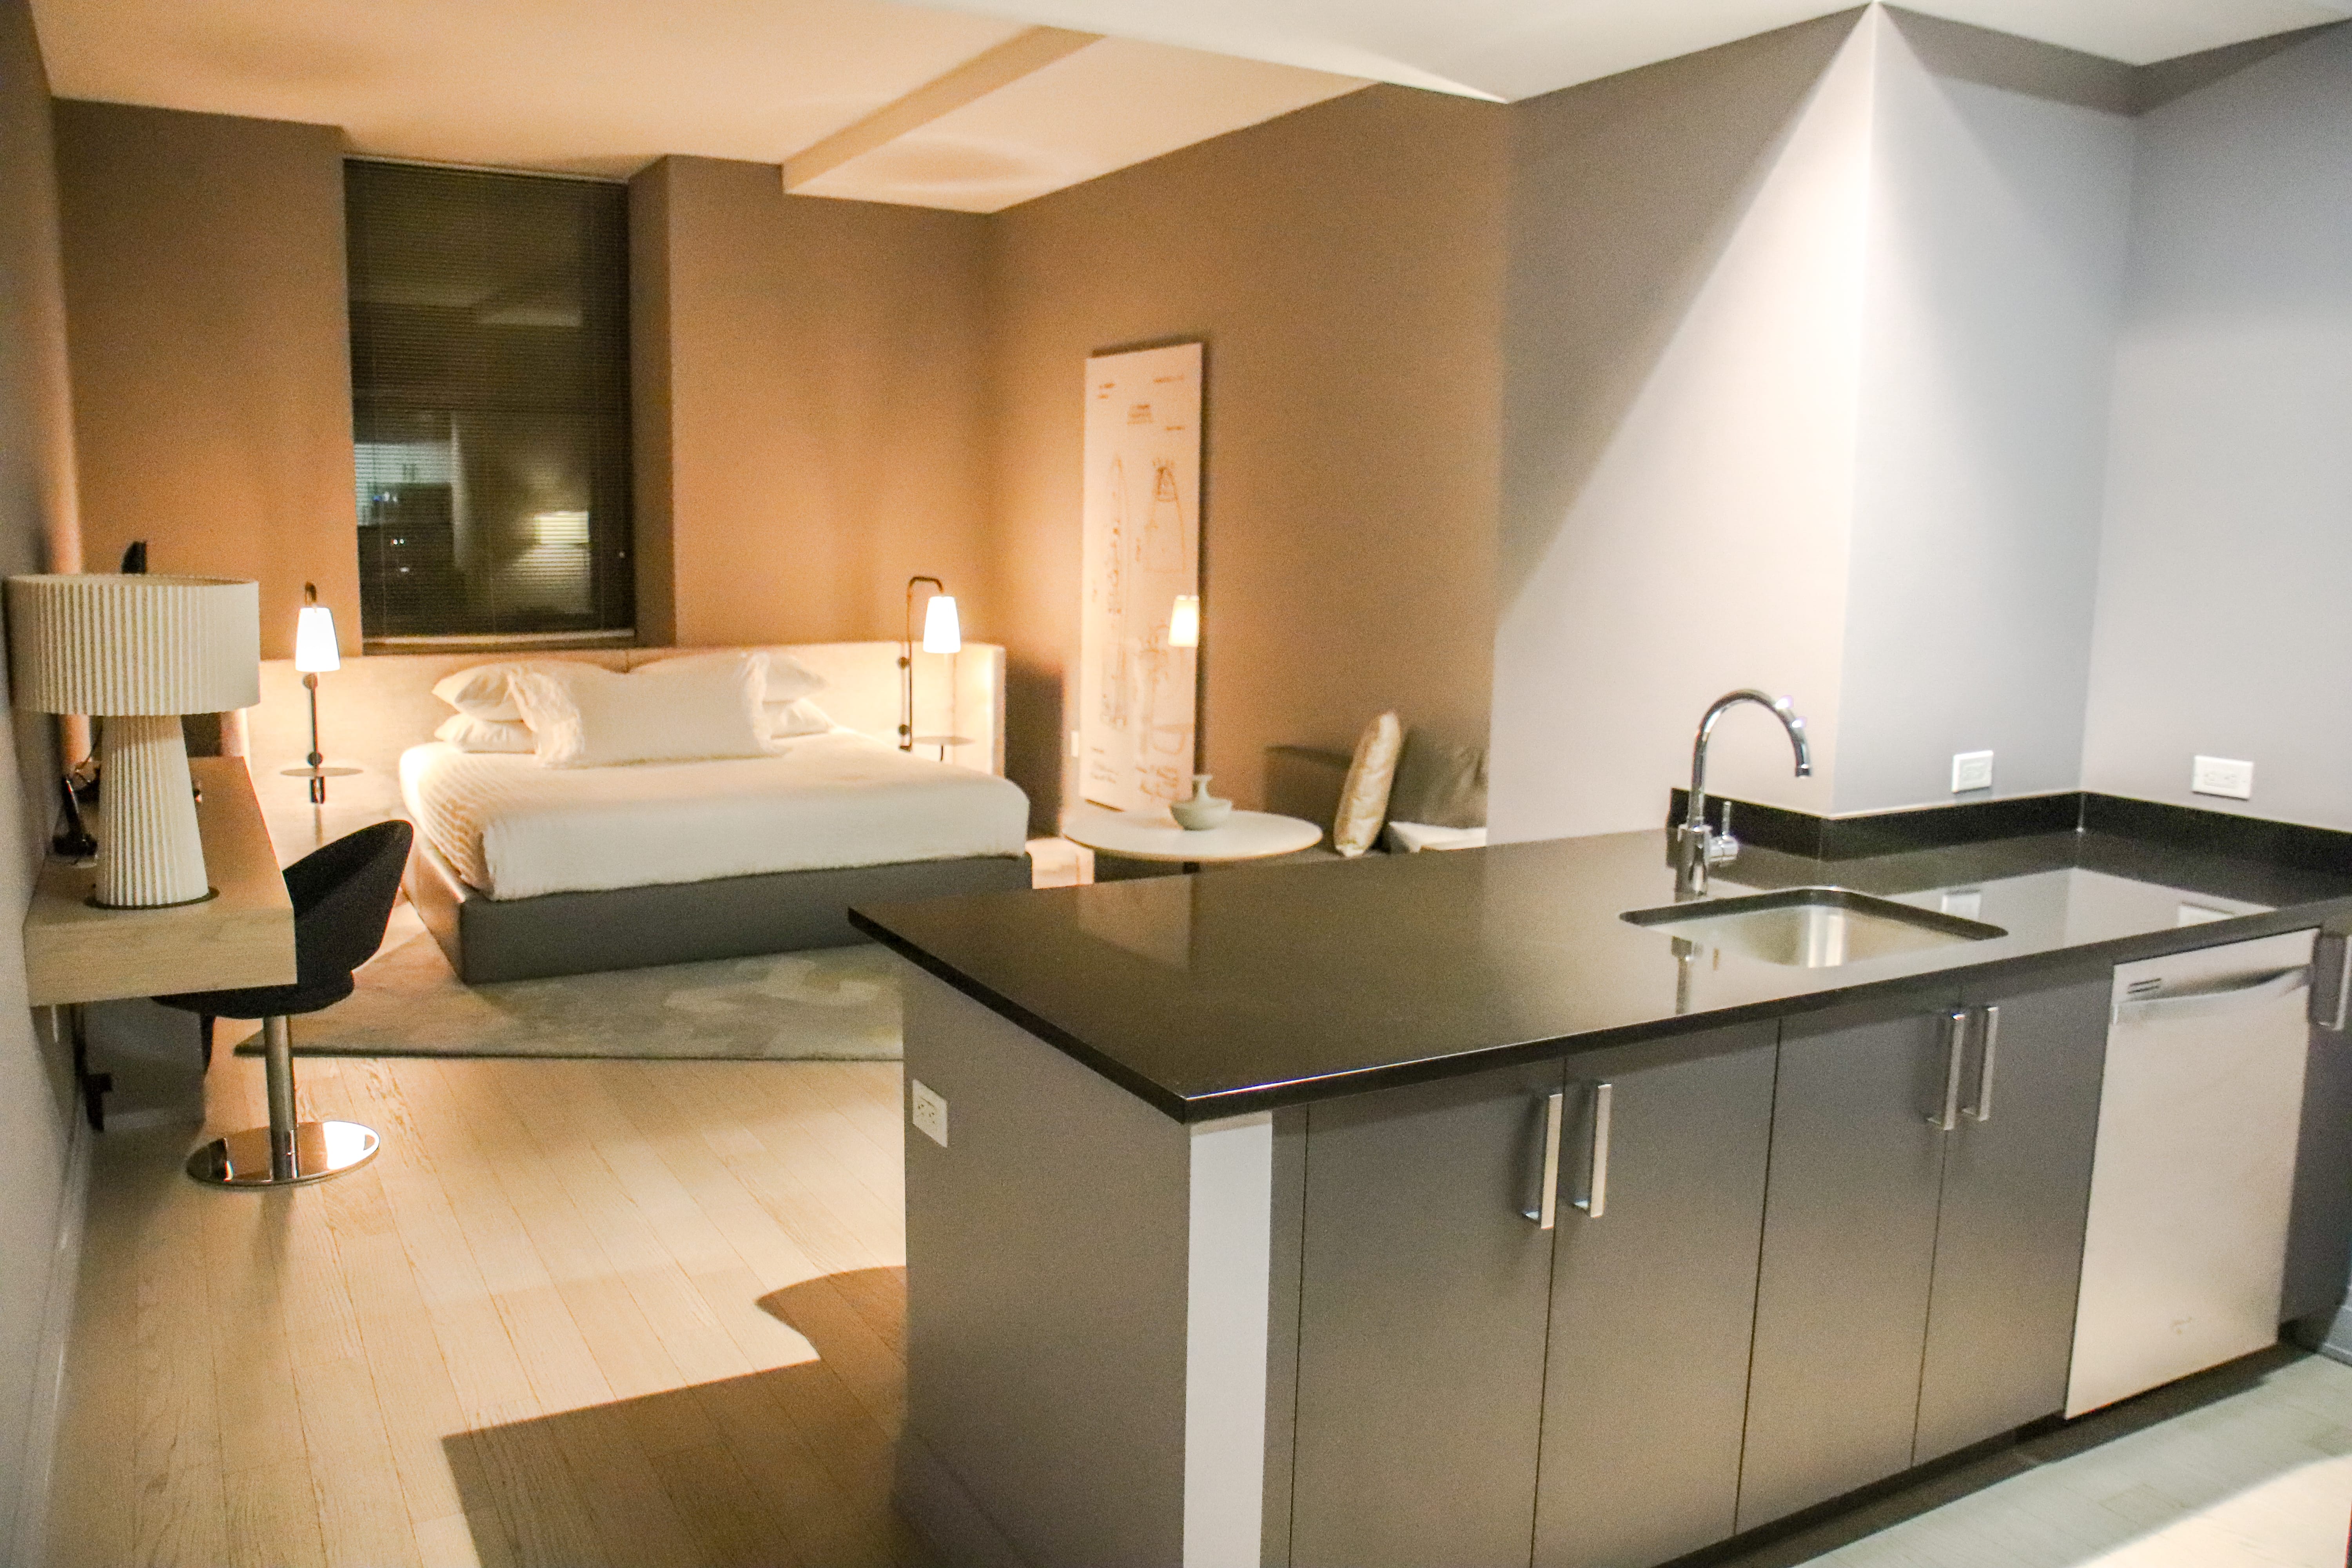 Q&A Hotel Review - Executive Studio Apartment